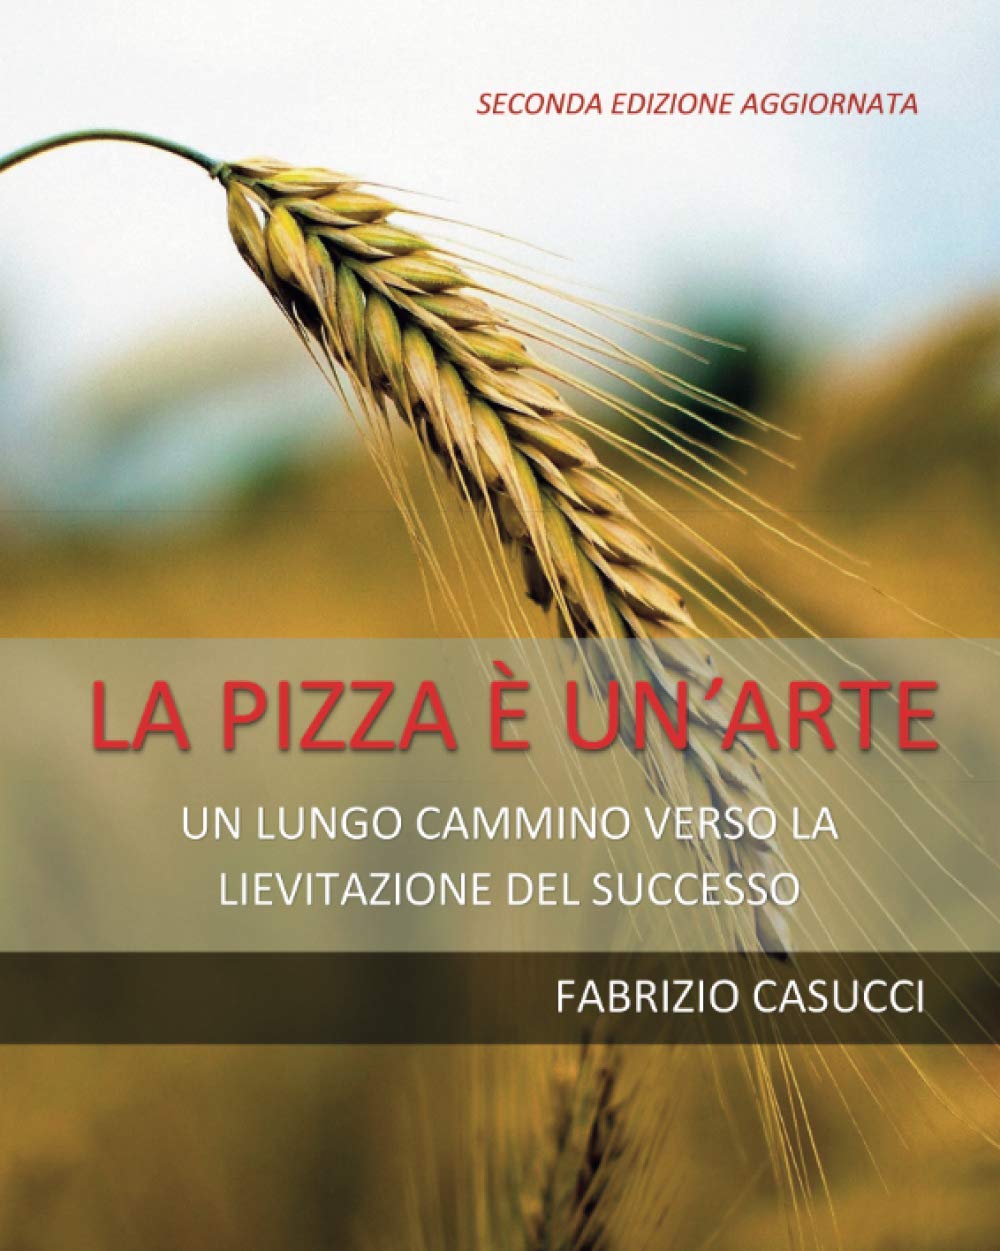 La pizza è un'arte (Fabrizio Casucci)